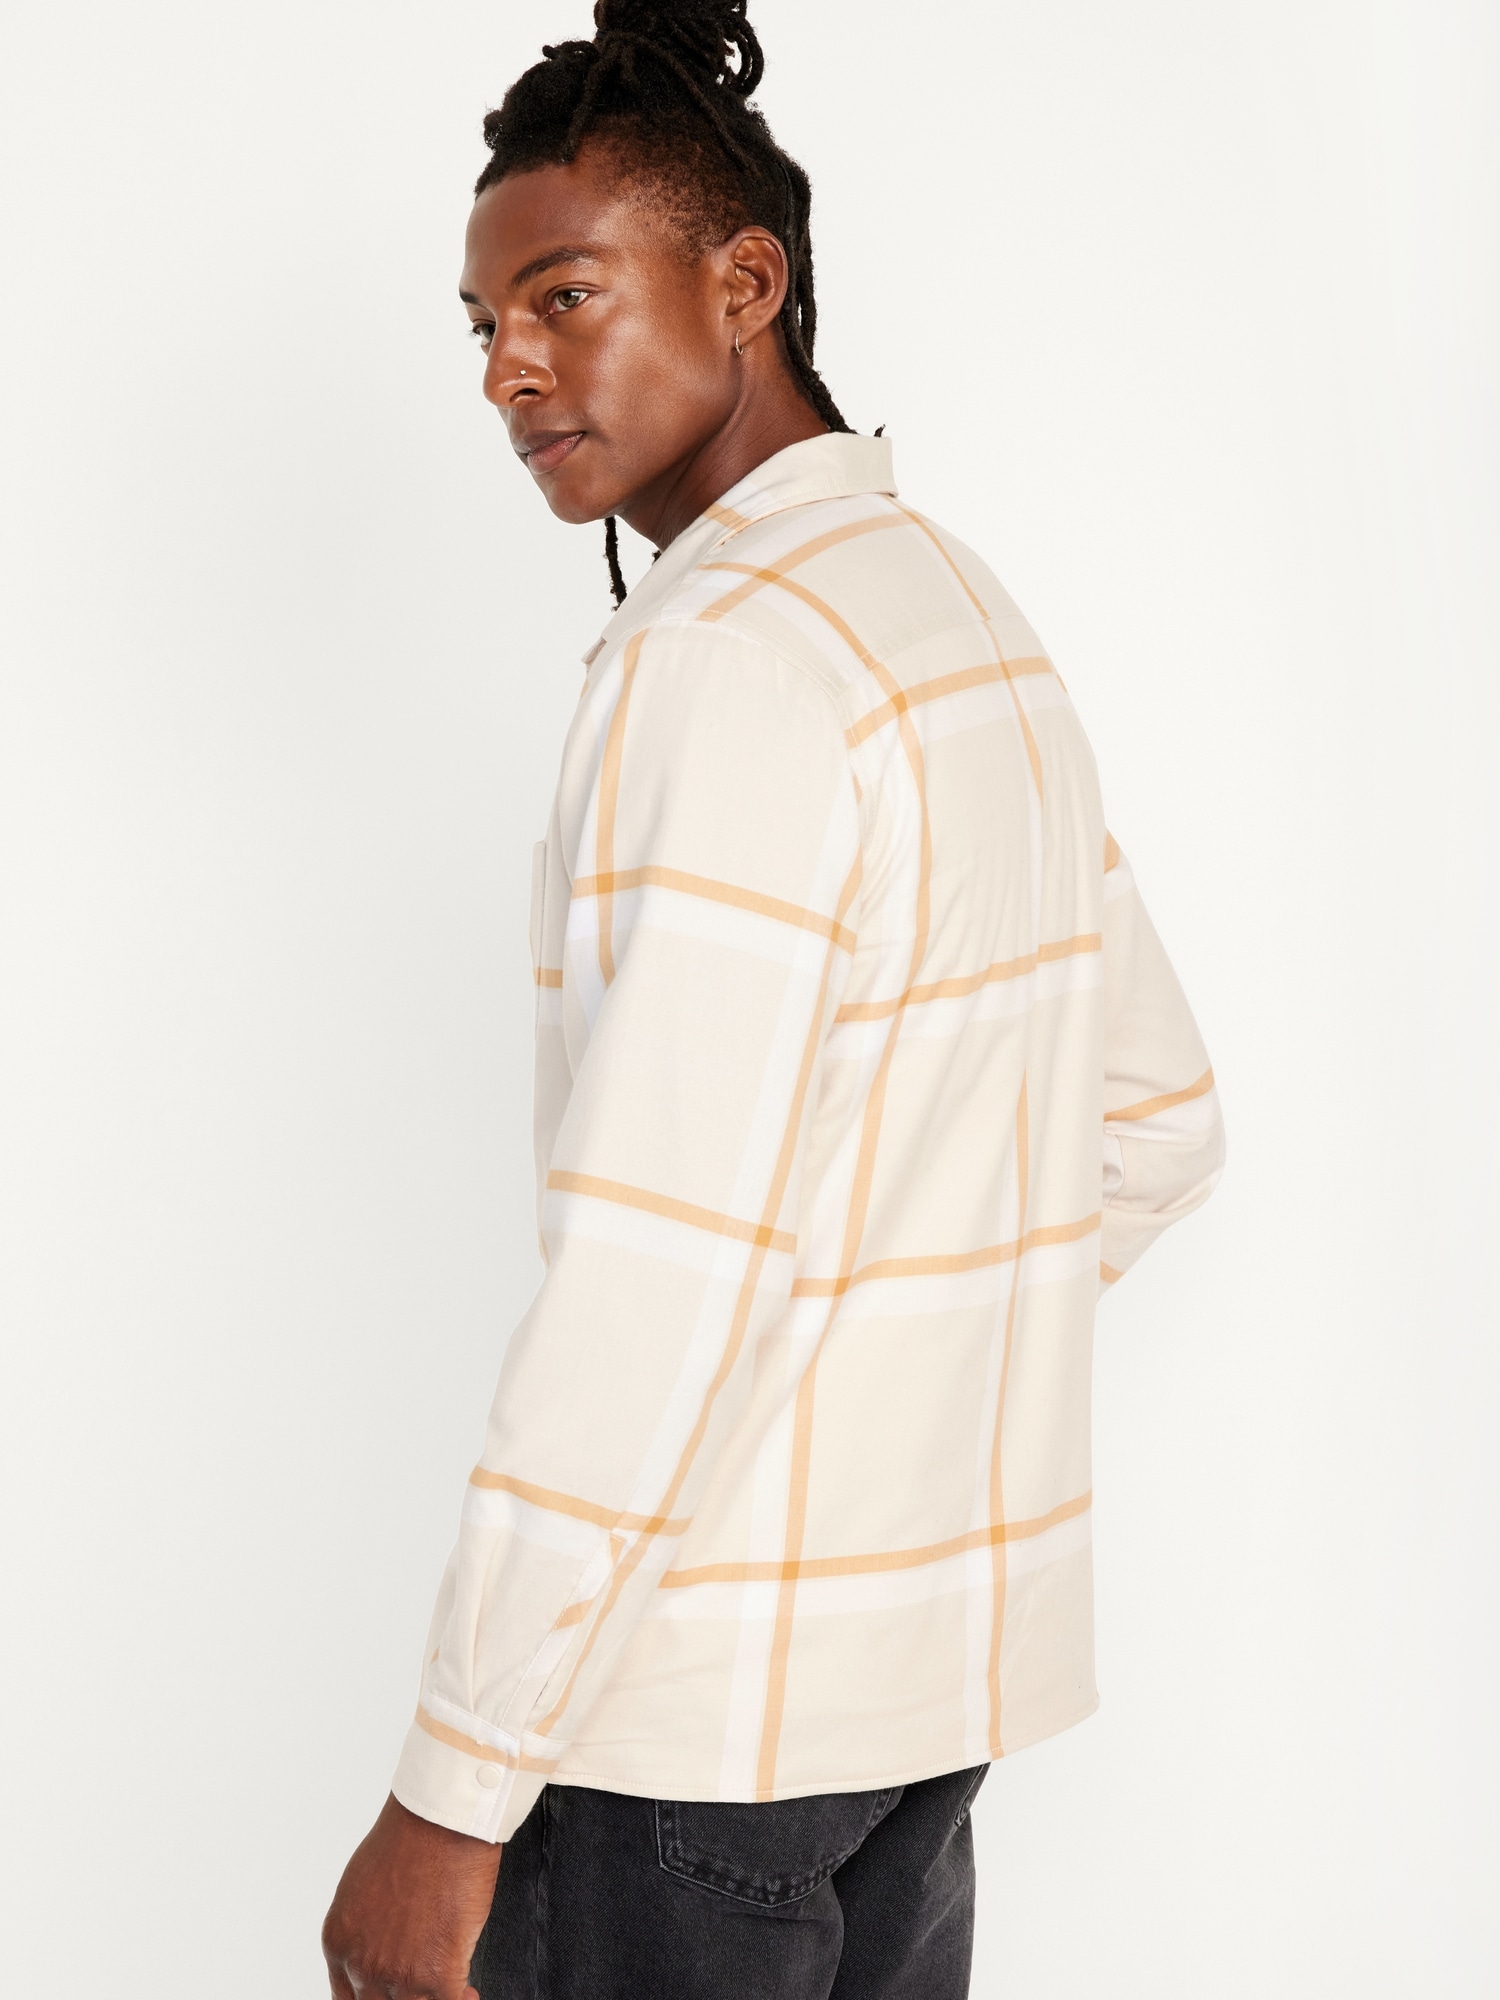 YYDGH Men's Full Zip Fleece Shirt Jackets Fleece Lined Button Down Coats  Soft Warm Shackets Hooded Drawstring Outwear